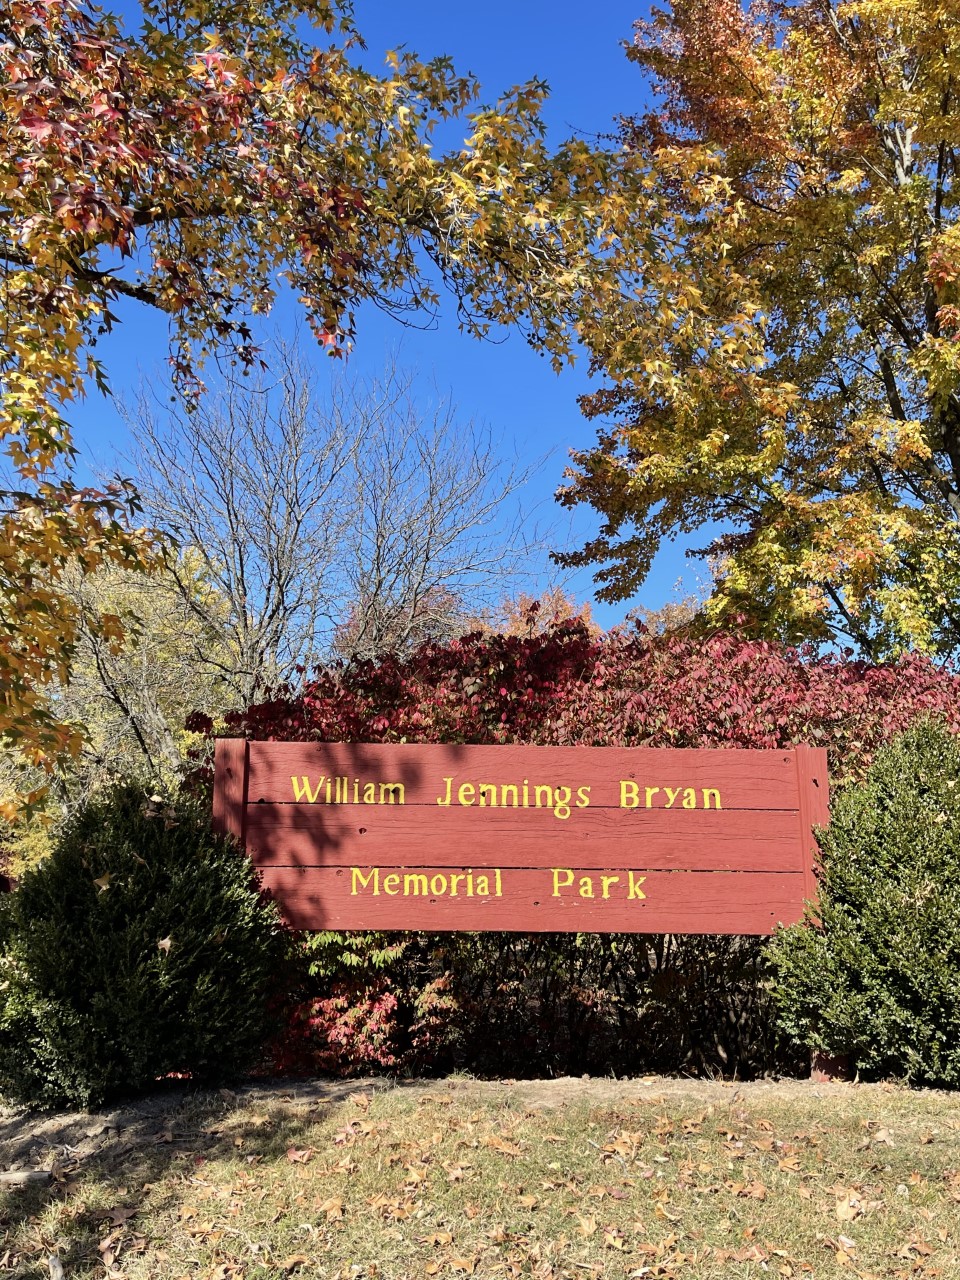 Bryan Memorial Park